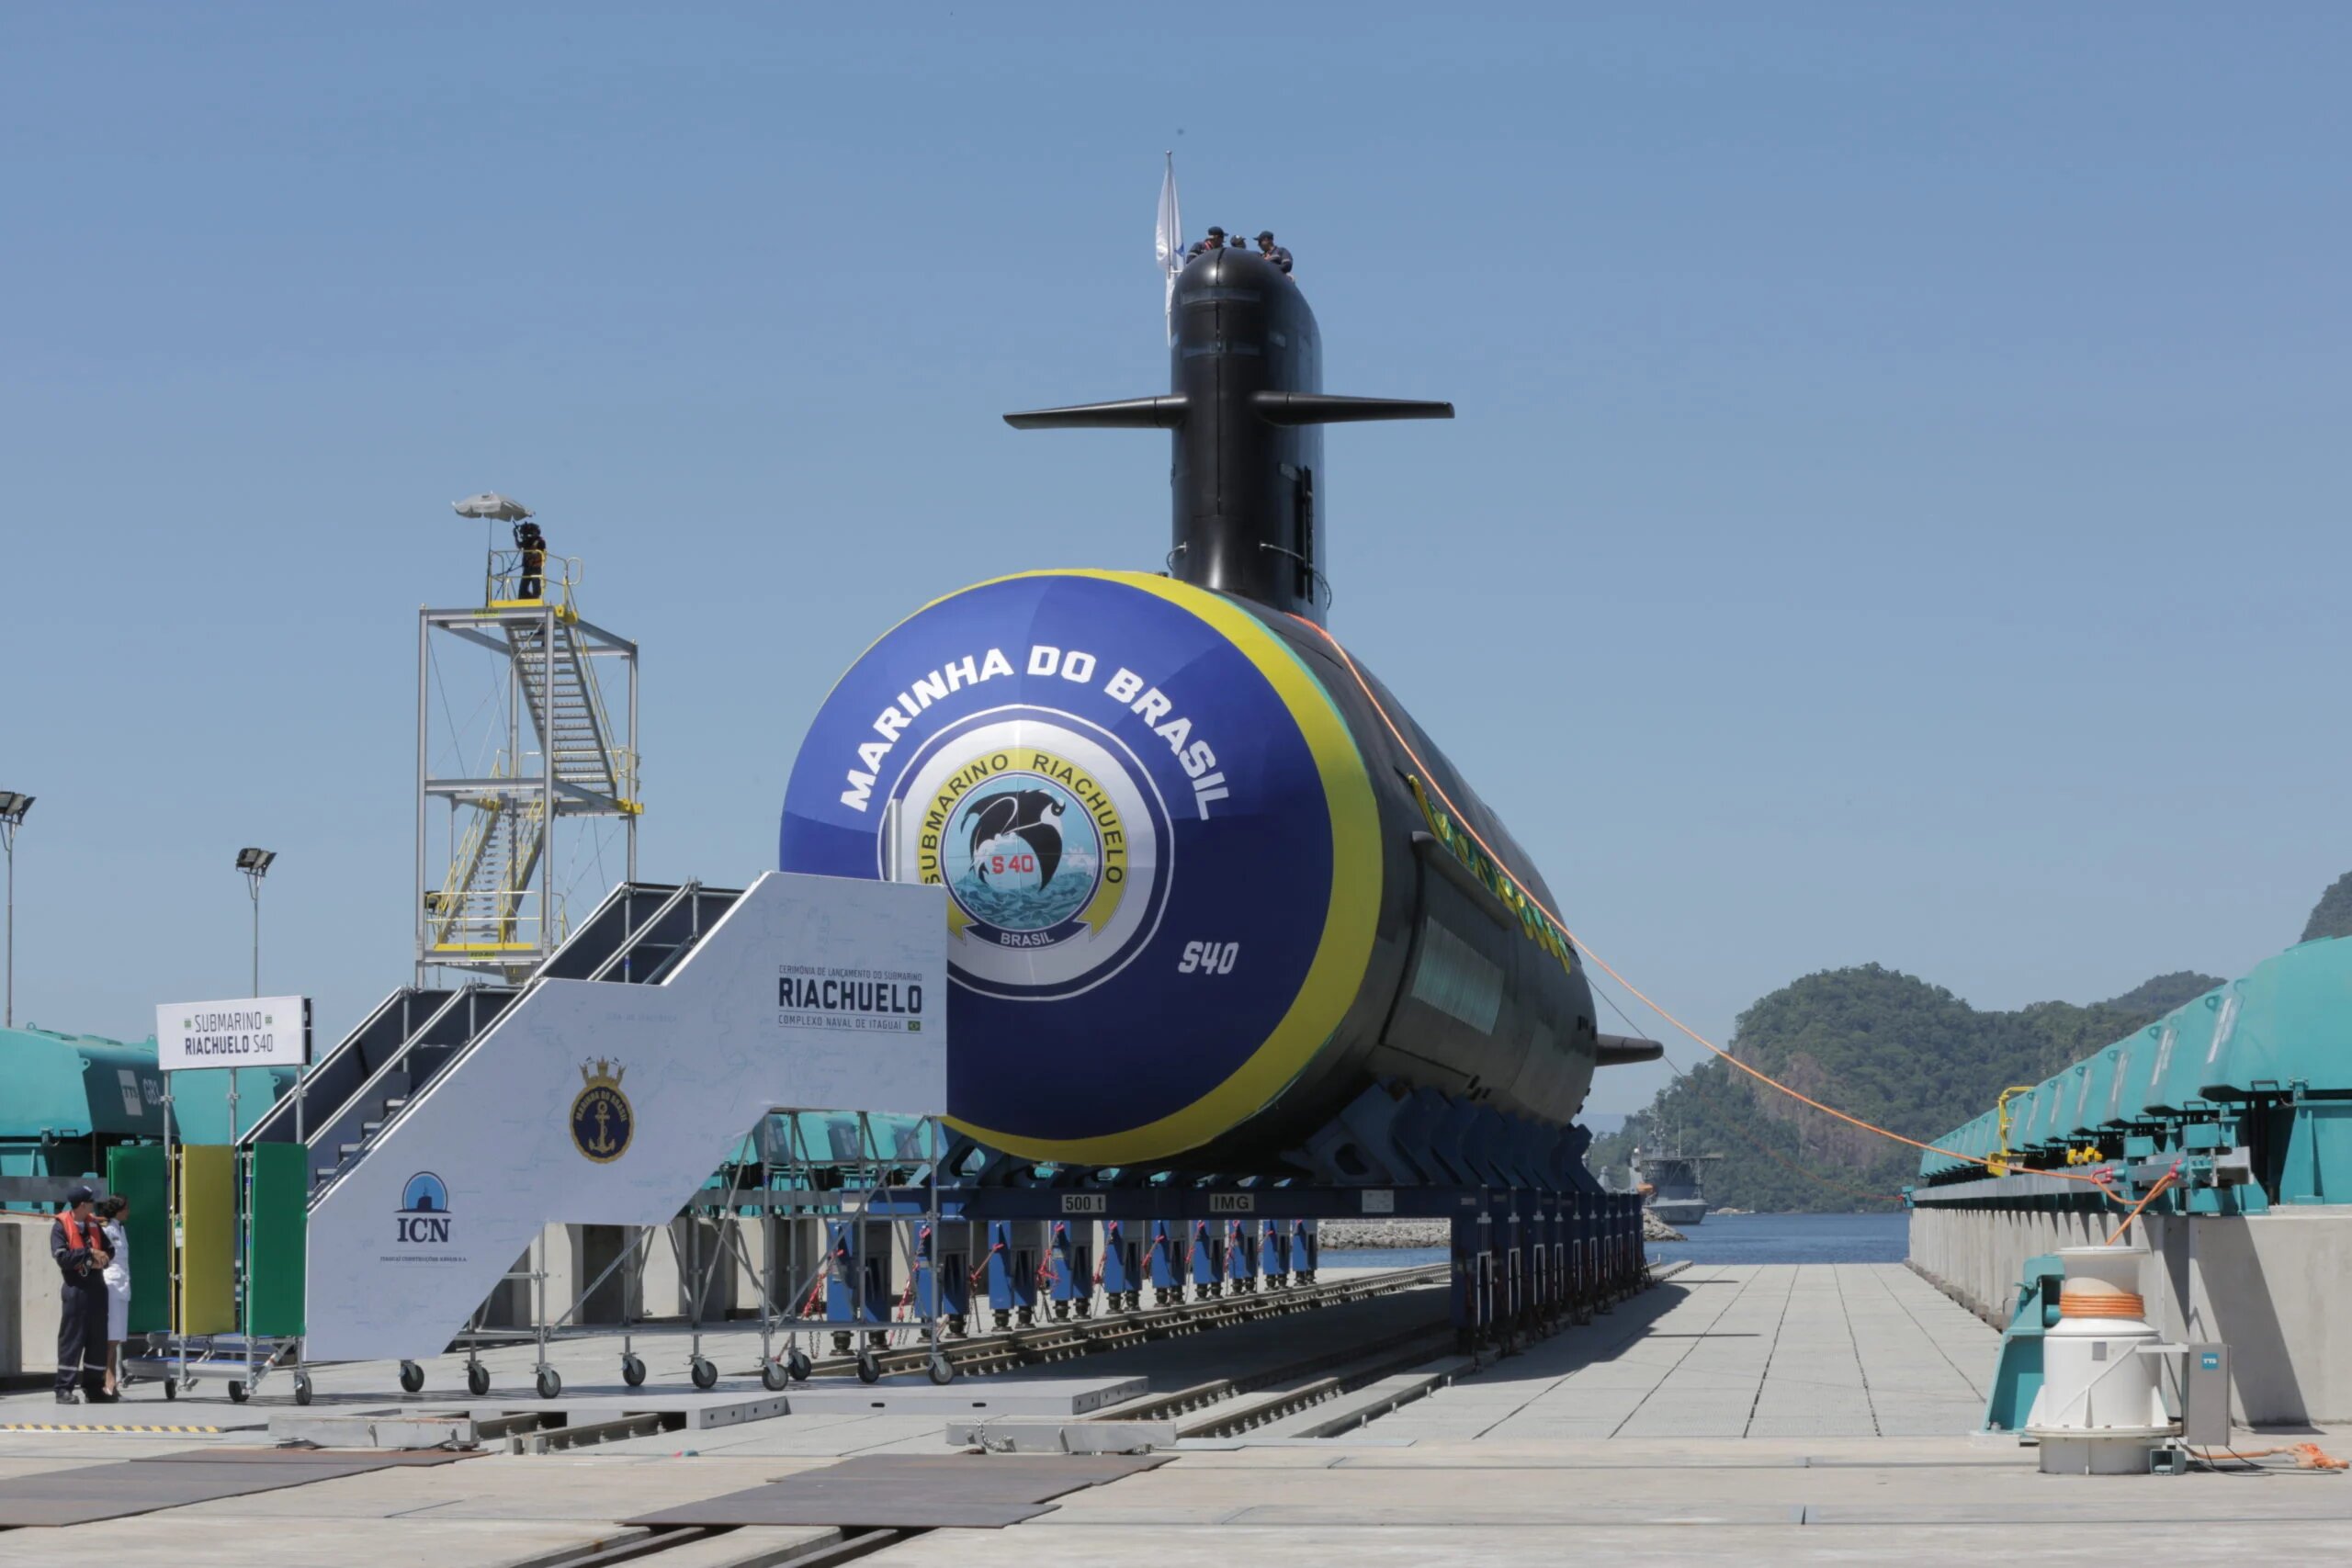 O projeto promete contribuir fortemente para a frota da Marinha do Brasil na defesa do Brasil ao longo dos próximos anos. O presidente da Nuclep destacou avanços dos últimos meses no projeto de construção do submarino de propulsão nuclear.